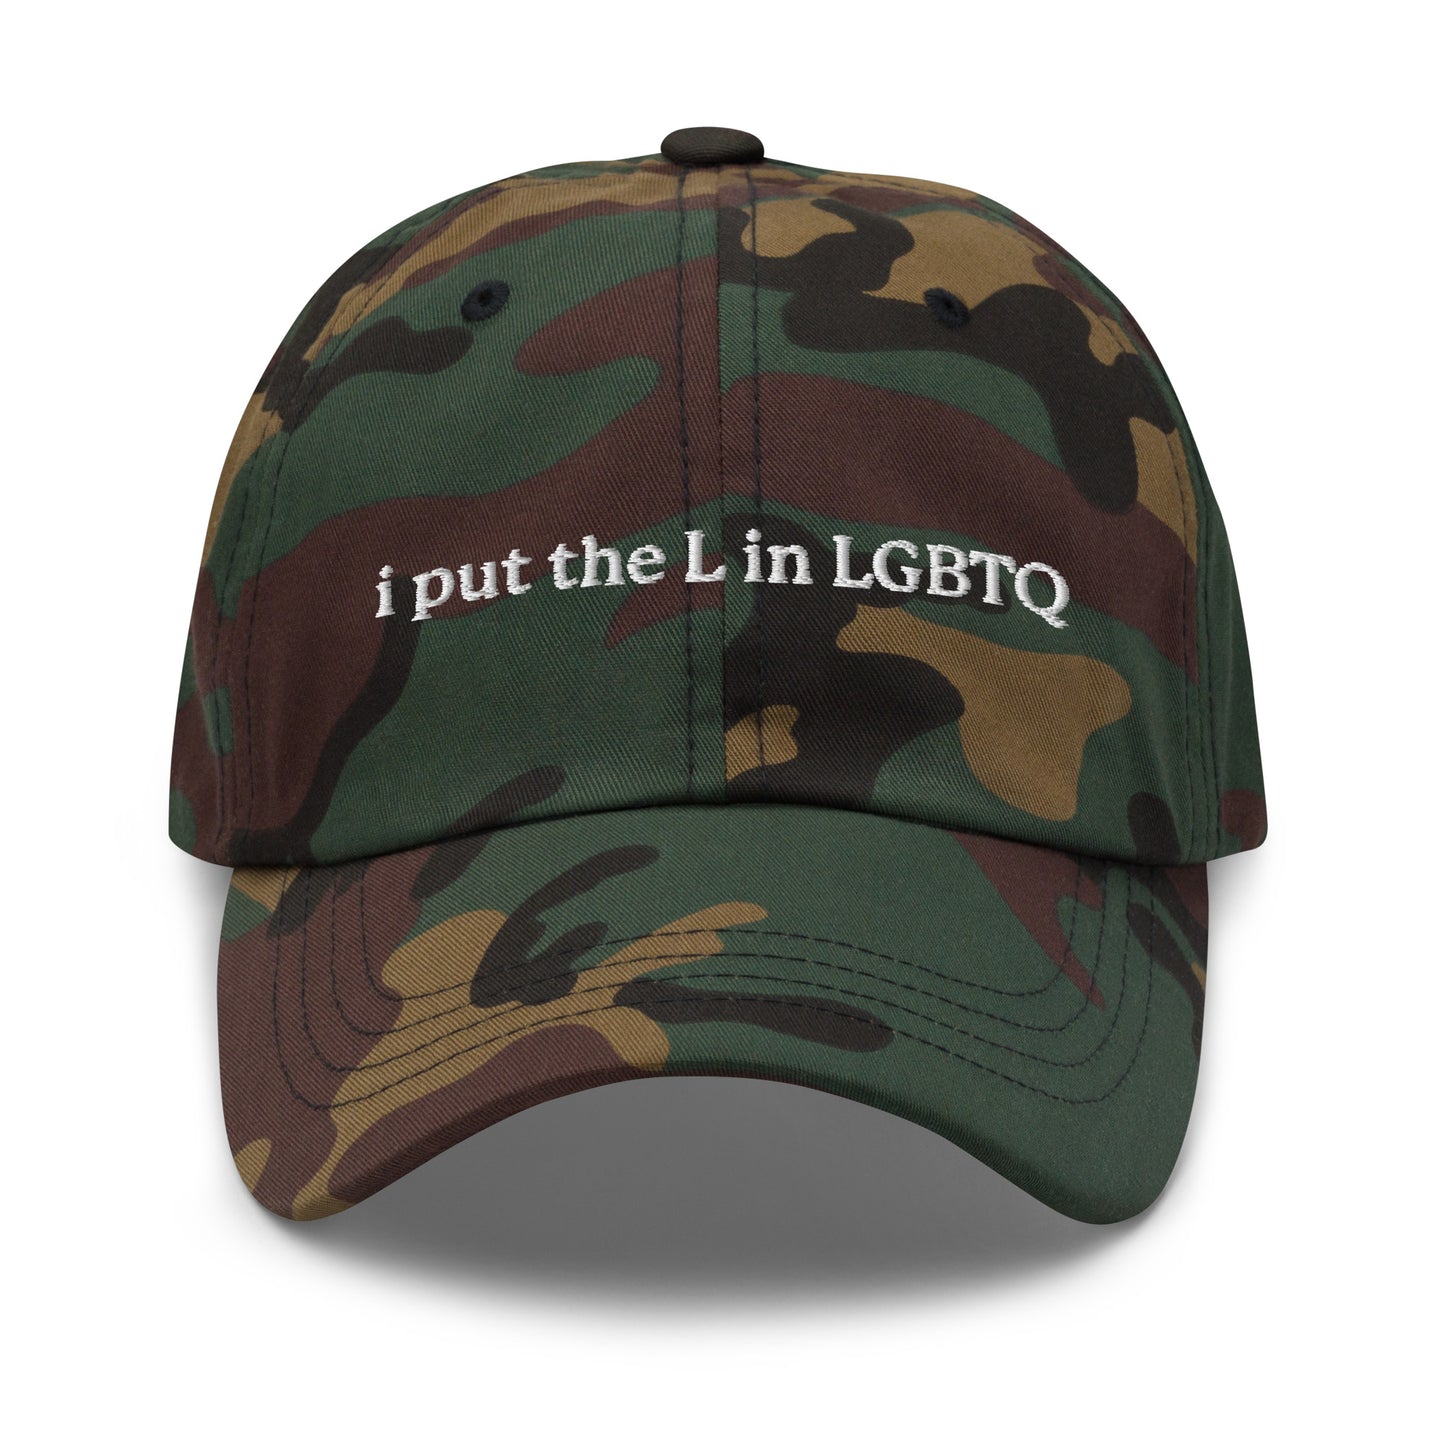 I Put the L in LGBTQ hat